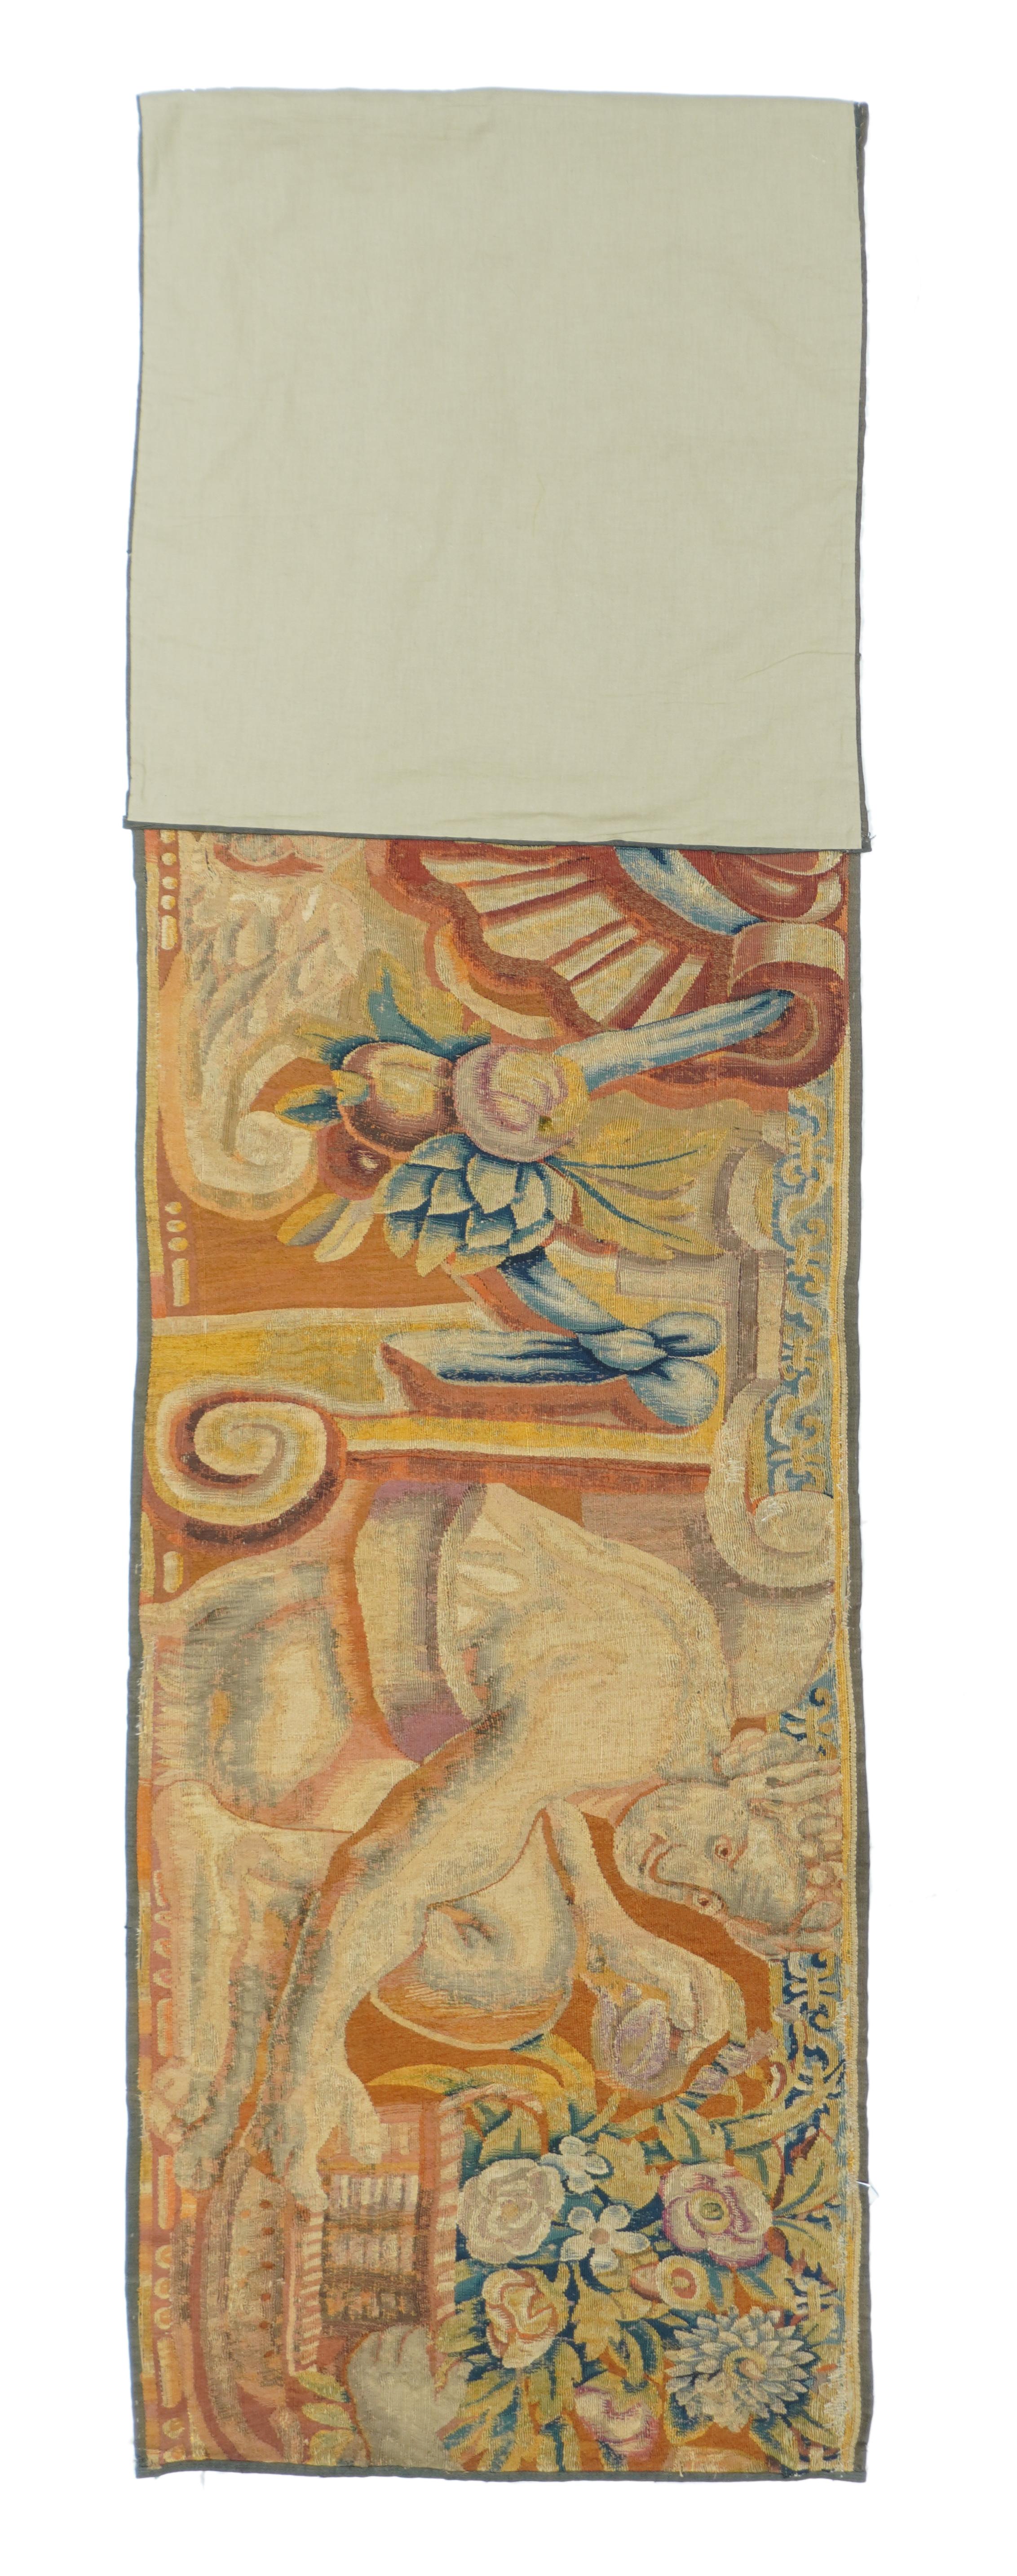 Von einem historischen oder mythologischen Wandteppich aus Brüssel, passend zu unserer 229.
Zwei kauernde männliche Figuren halten überquellende Blumenkörbe und flankieren ein muschelartiges Zentralmotiv mit dazugehörigen Früchten und einem